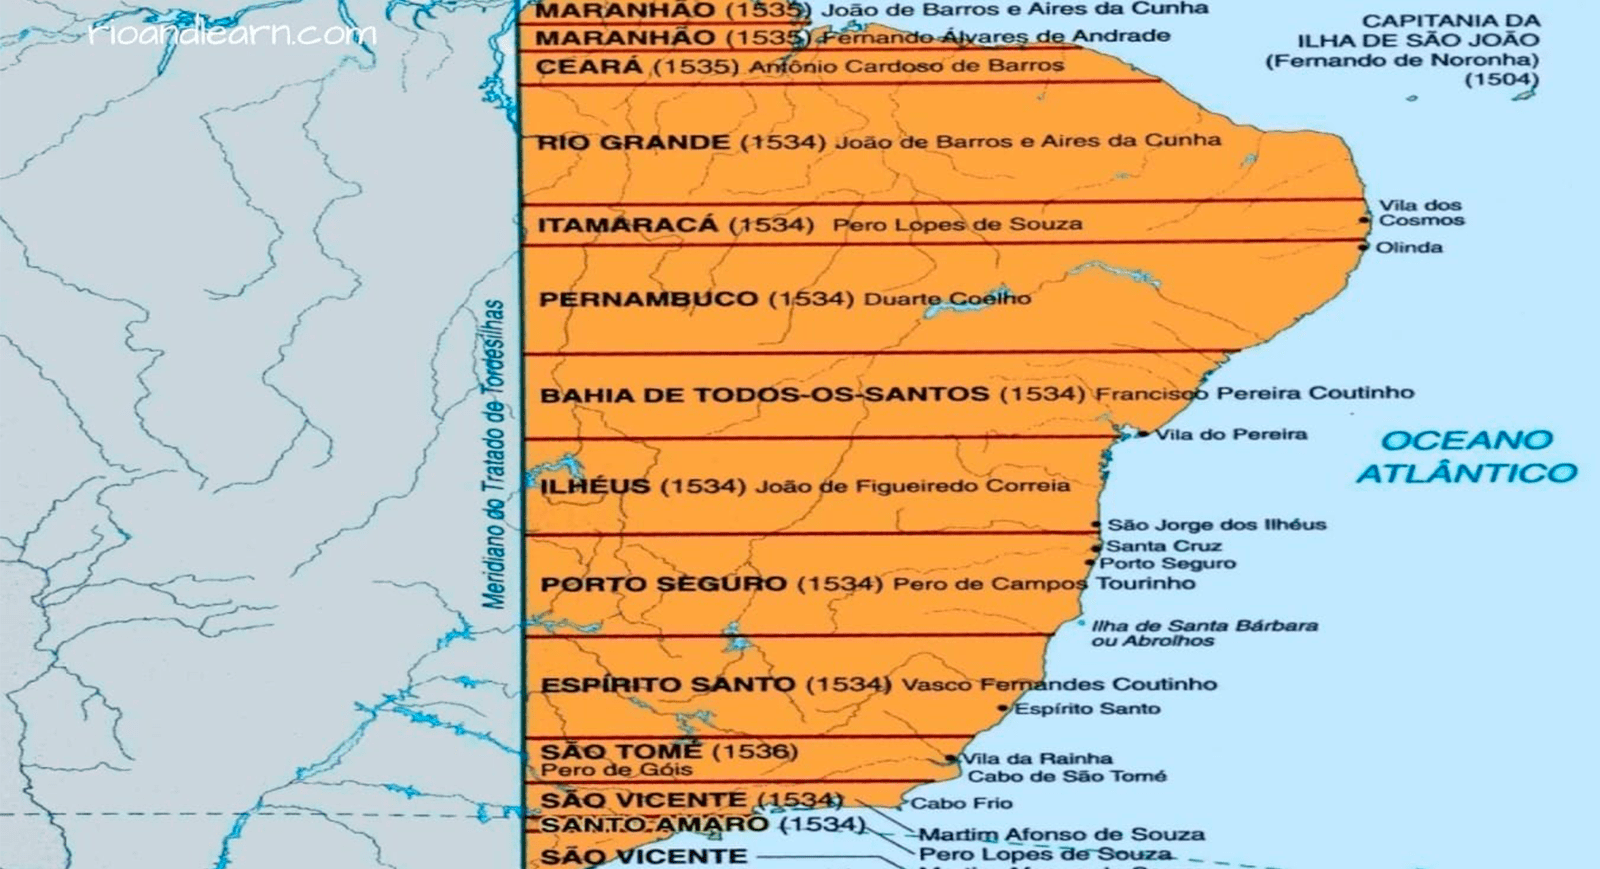 Formação do território brasileiro - História e principais características